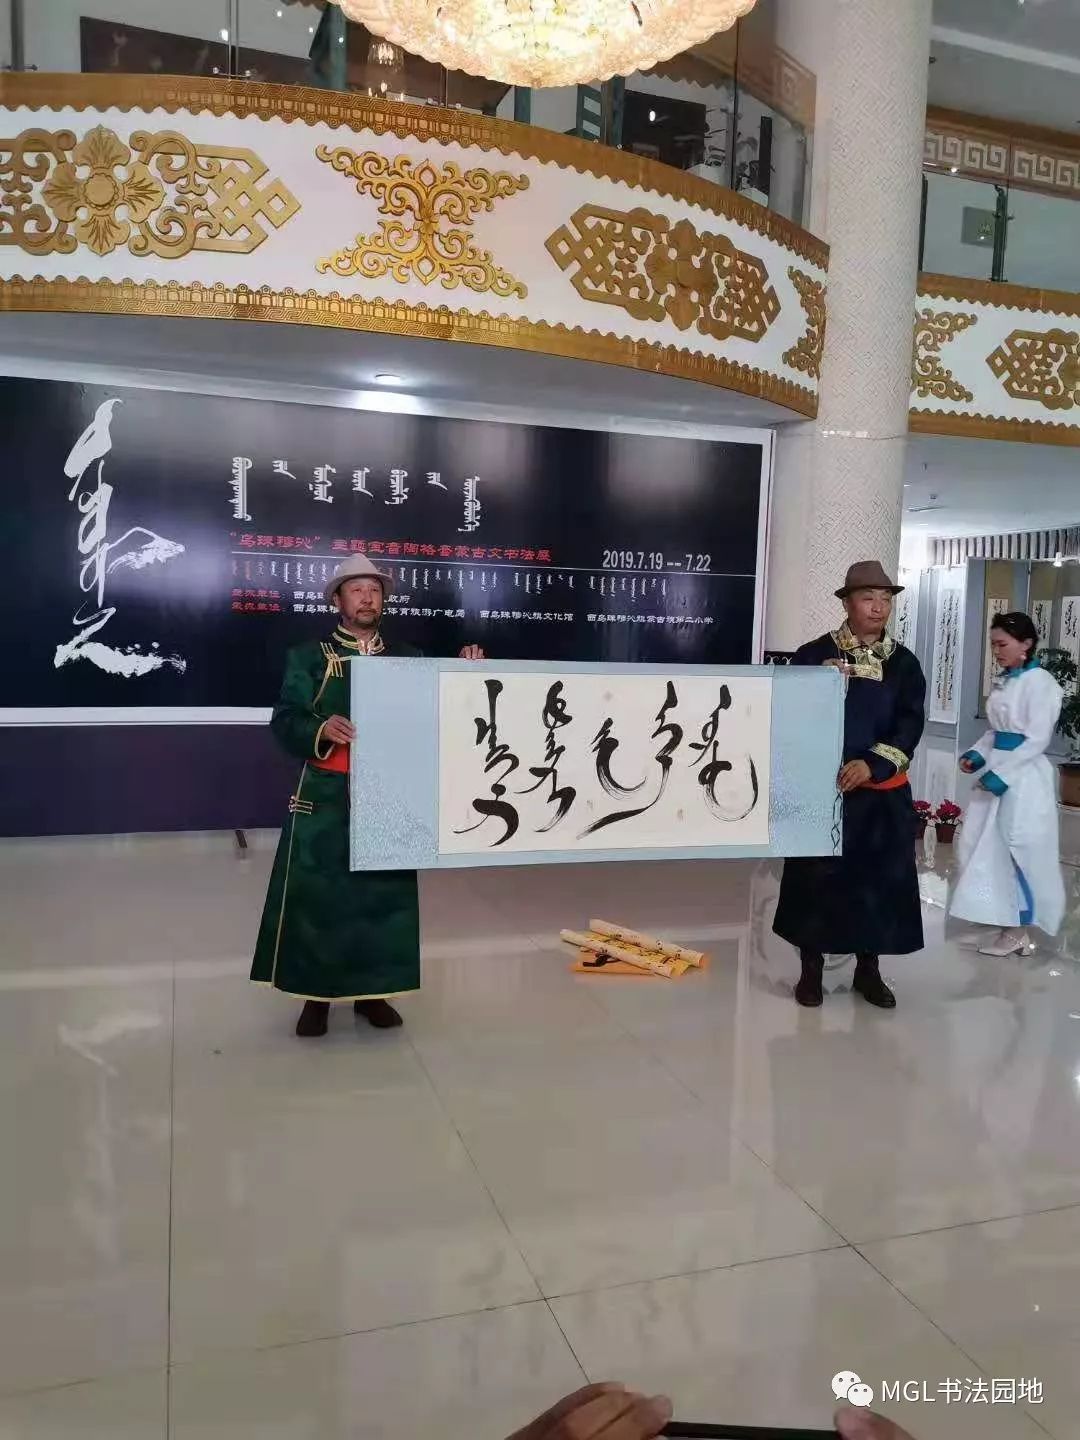 宝音陶格陶“乌珠穆沁”主题蒙古文书法展在西乌旗举办 第10张